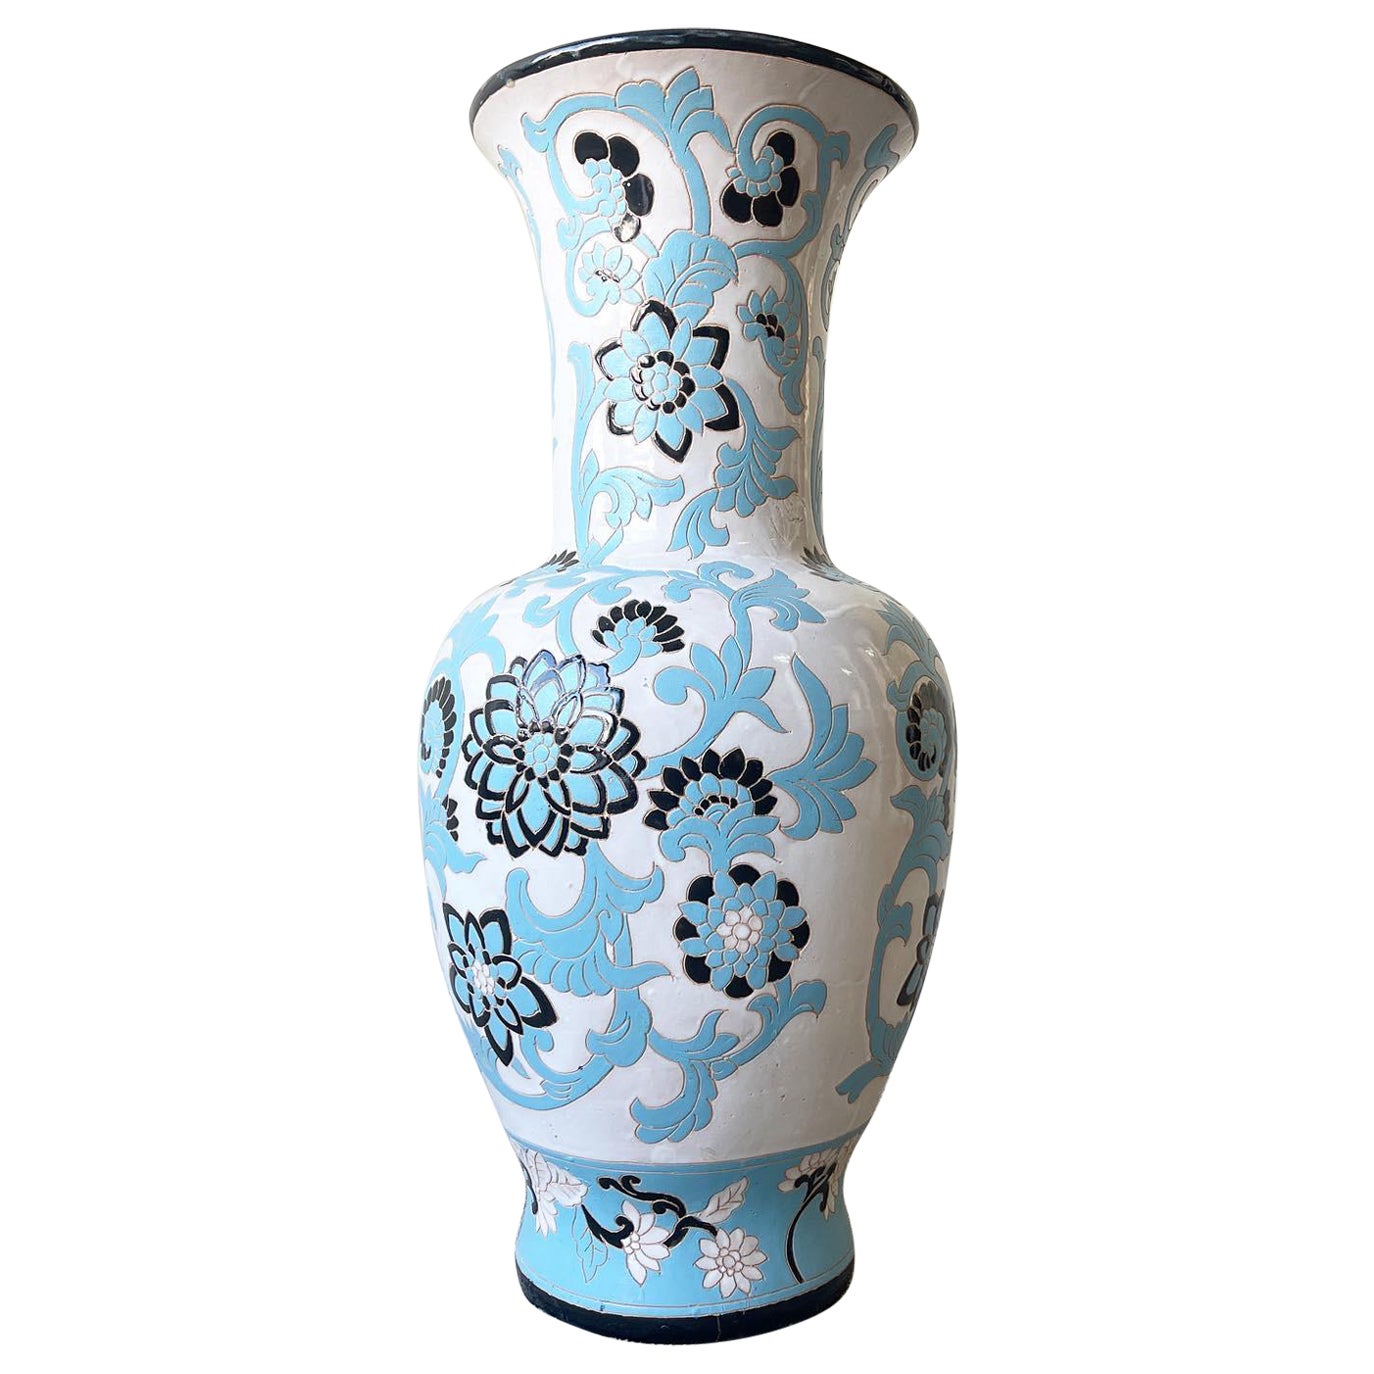 Vase de sol asiatique en poterie de fleurs de lotus blanches, noires et bleues